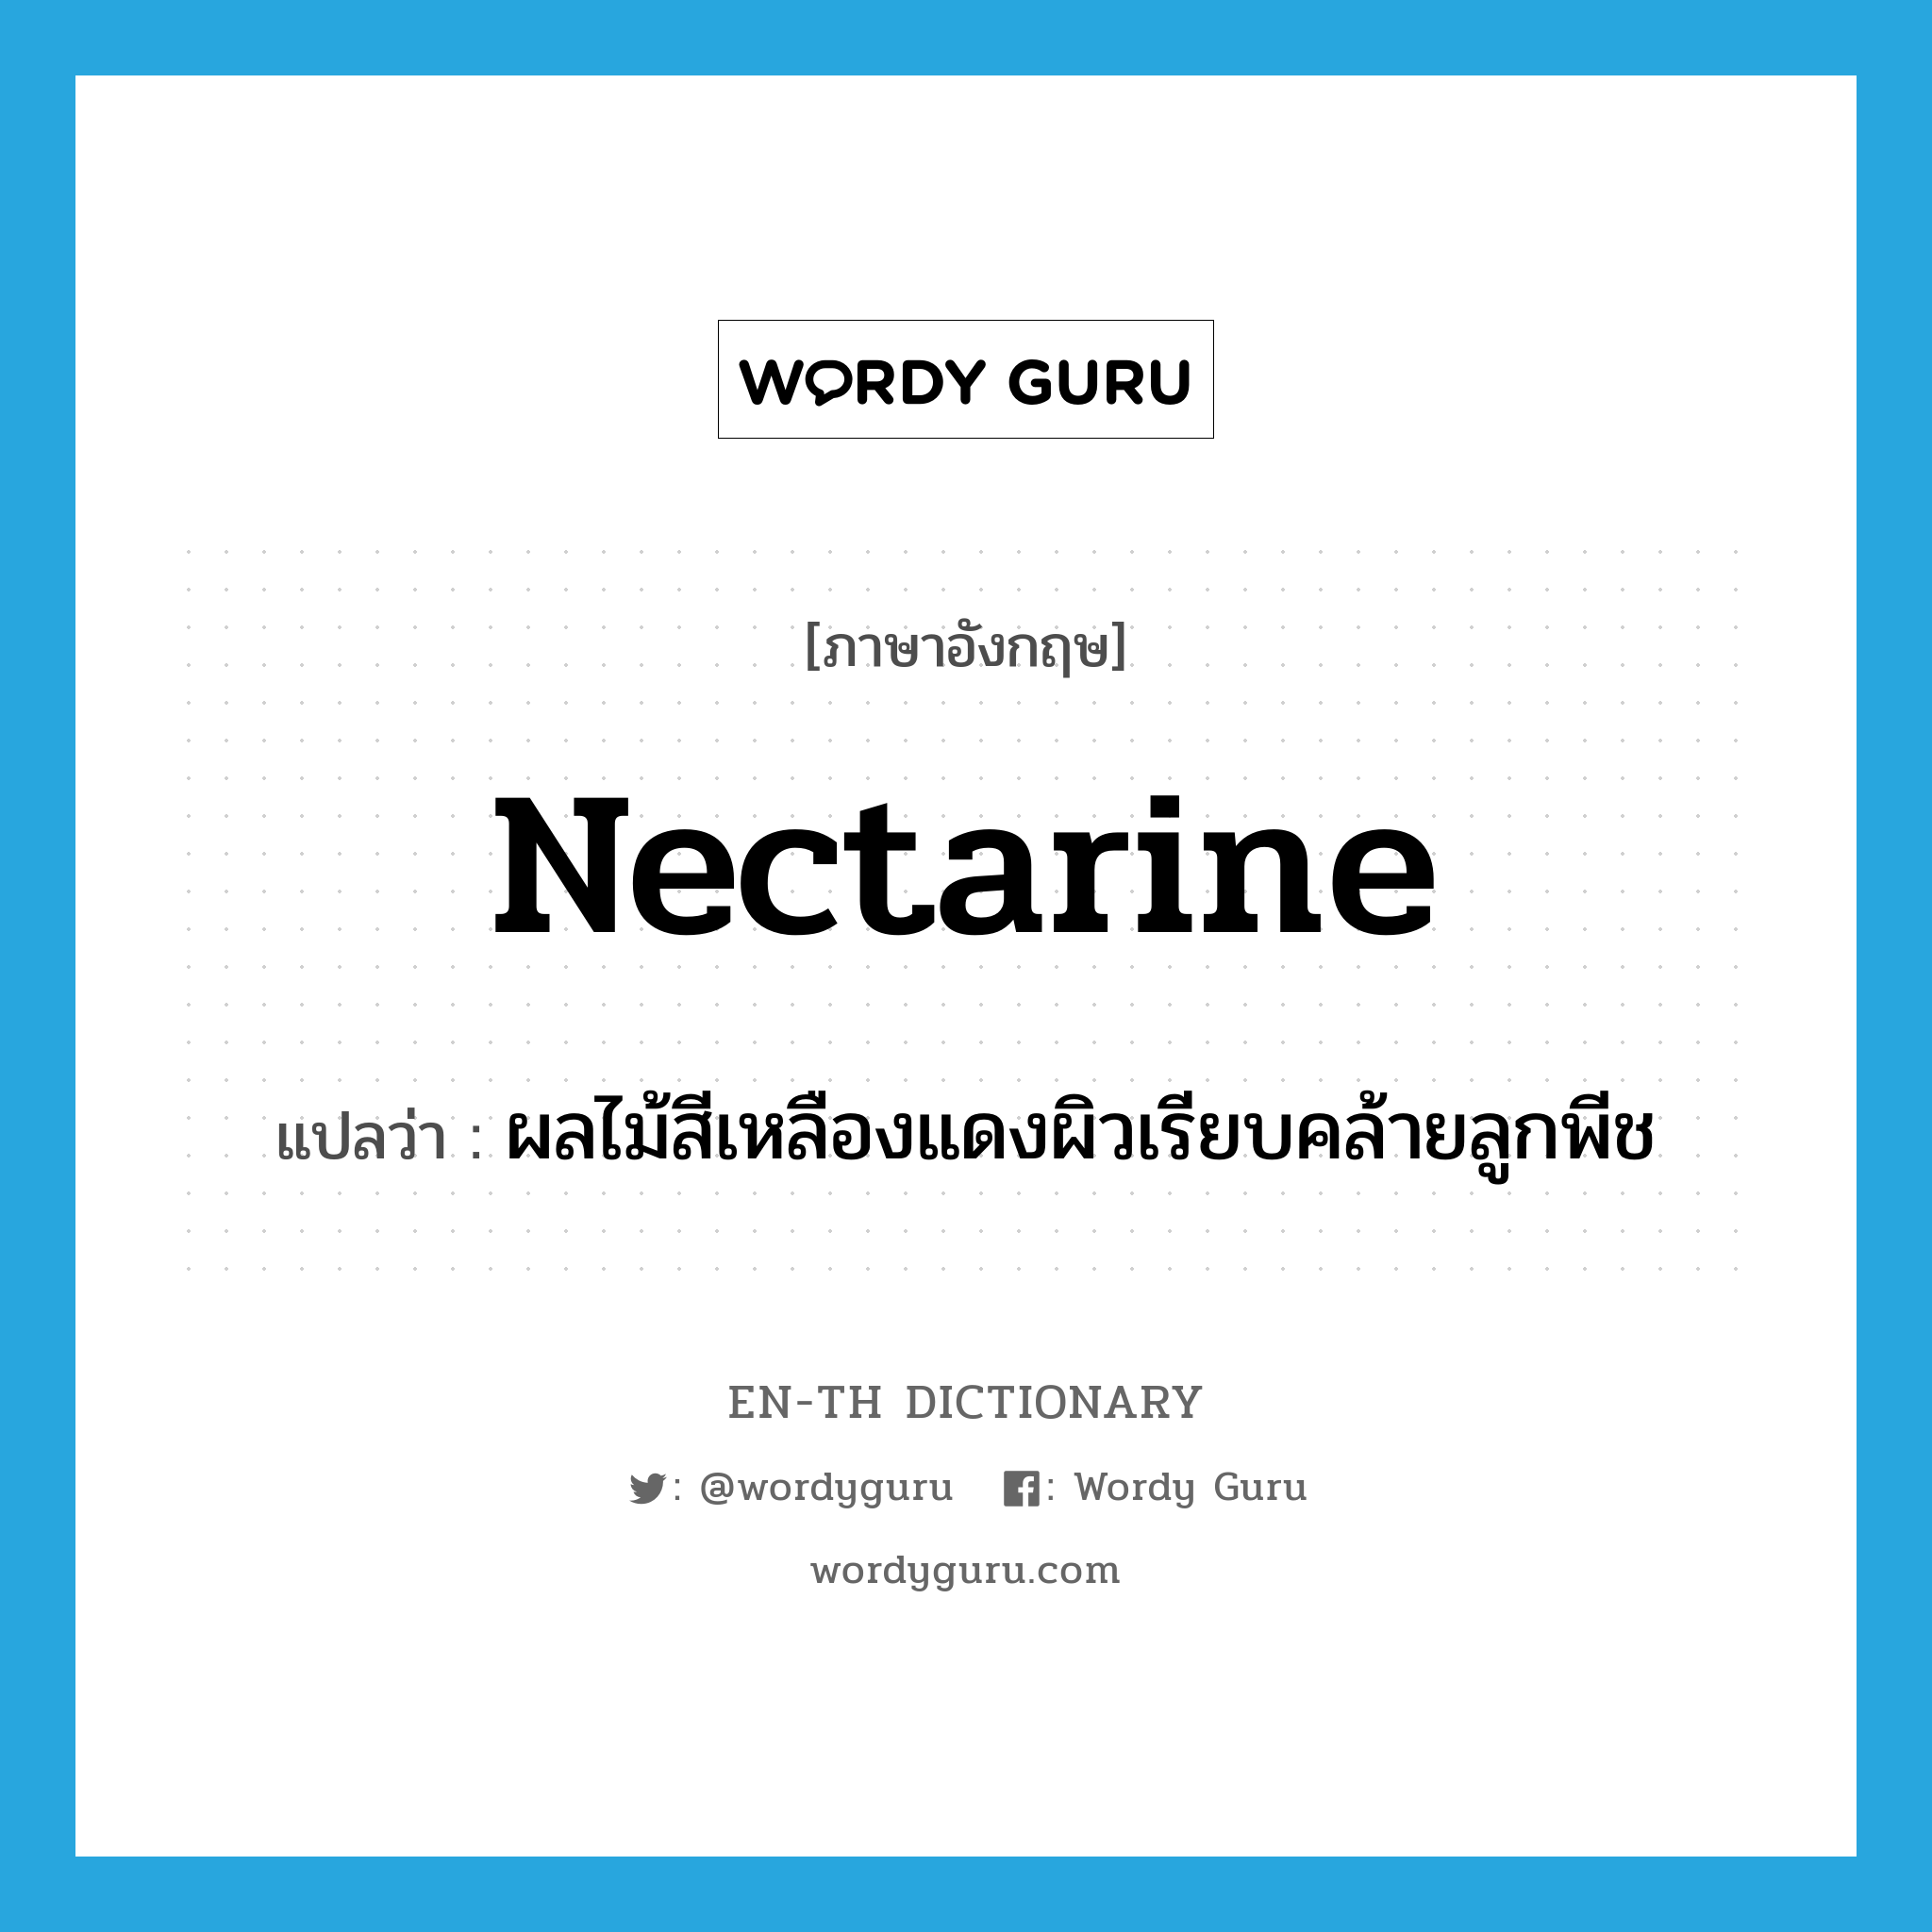 nectarine แปลว่า?, คำศัพท์ภาษาอังกฤษ nectarine แปลว่า ผลไม้สีเหลืองแดงผิวเรียบคล้ายลูกพีช ประเภท N หมวด N